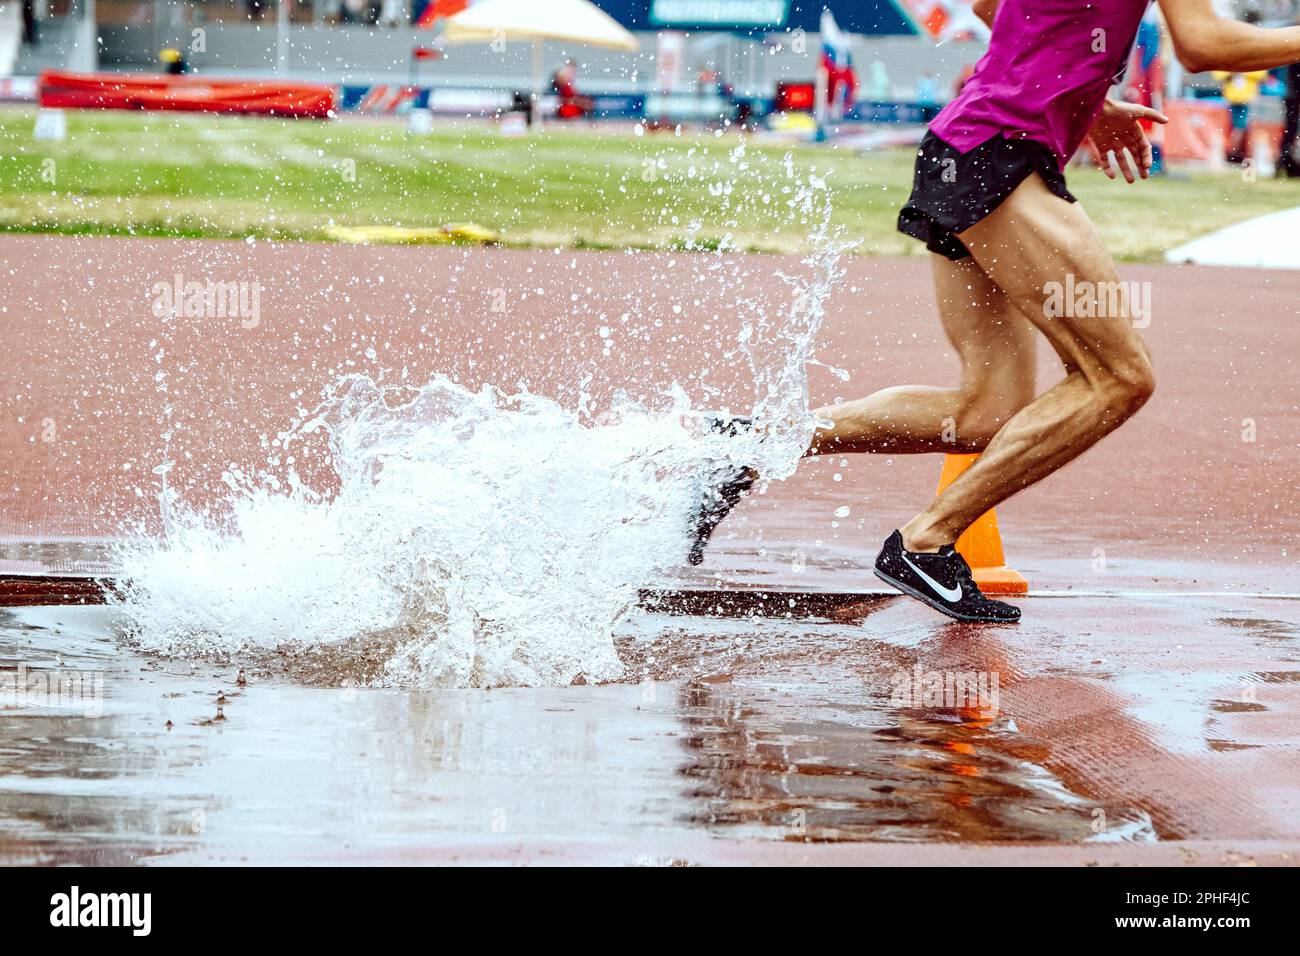 Sportlerläufer mit Steeplechase in Nike Spikes Schuhen, Leichtathletikweltmeisterschaftswettbewerb, sportliches Editorial Foto Stockfoto